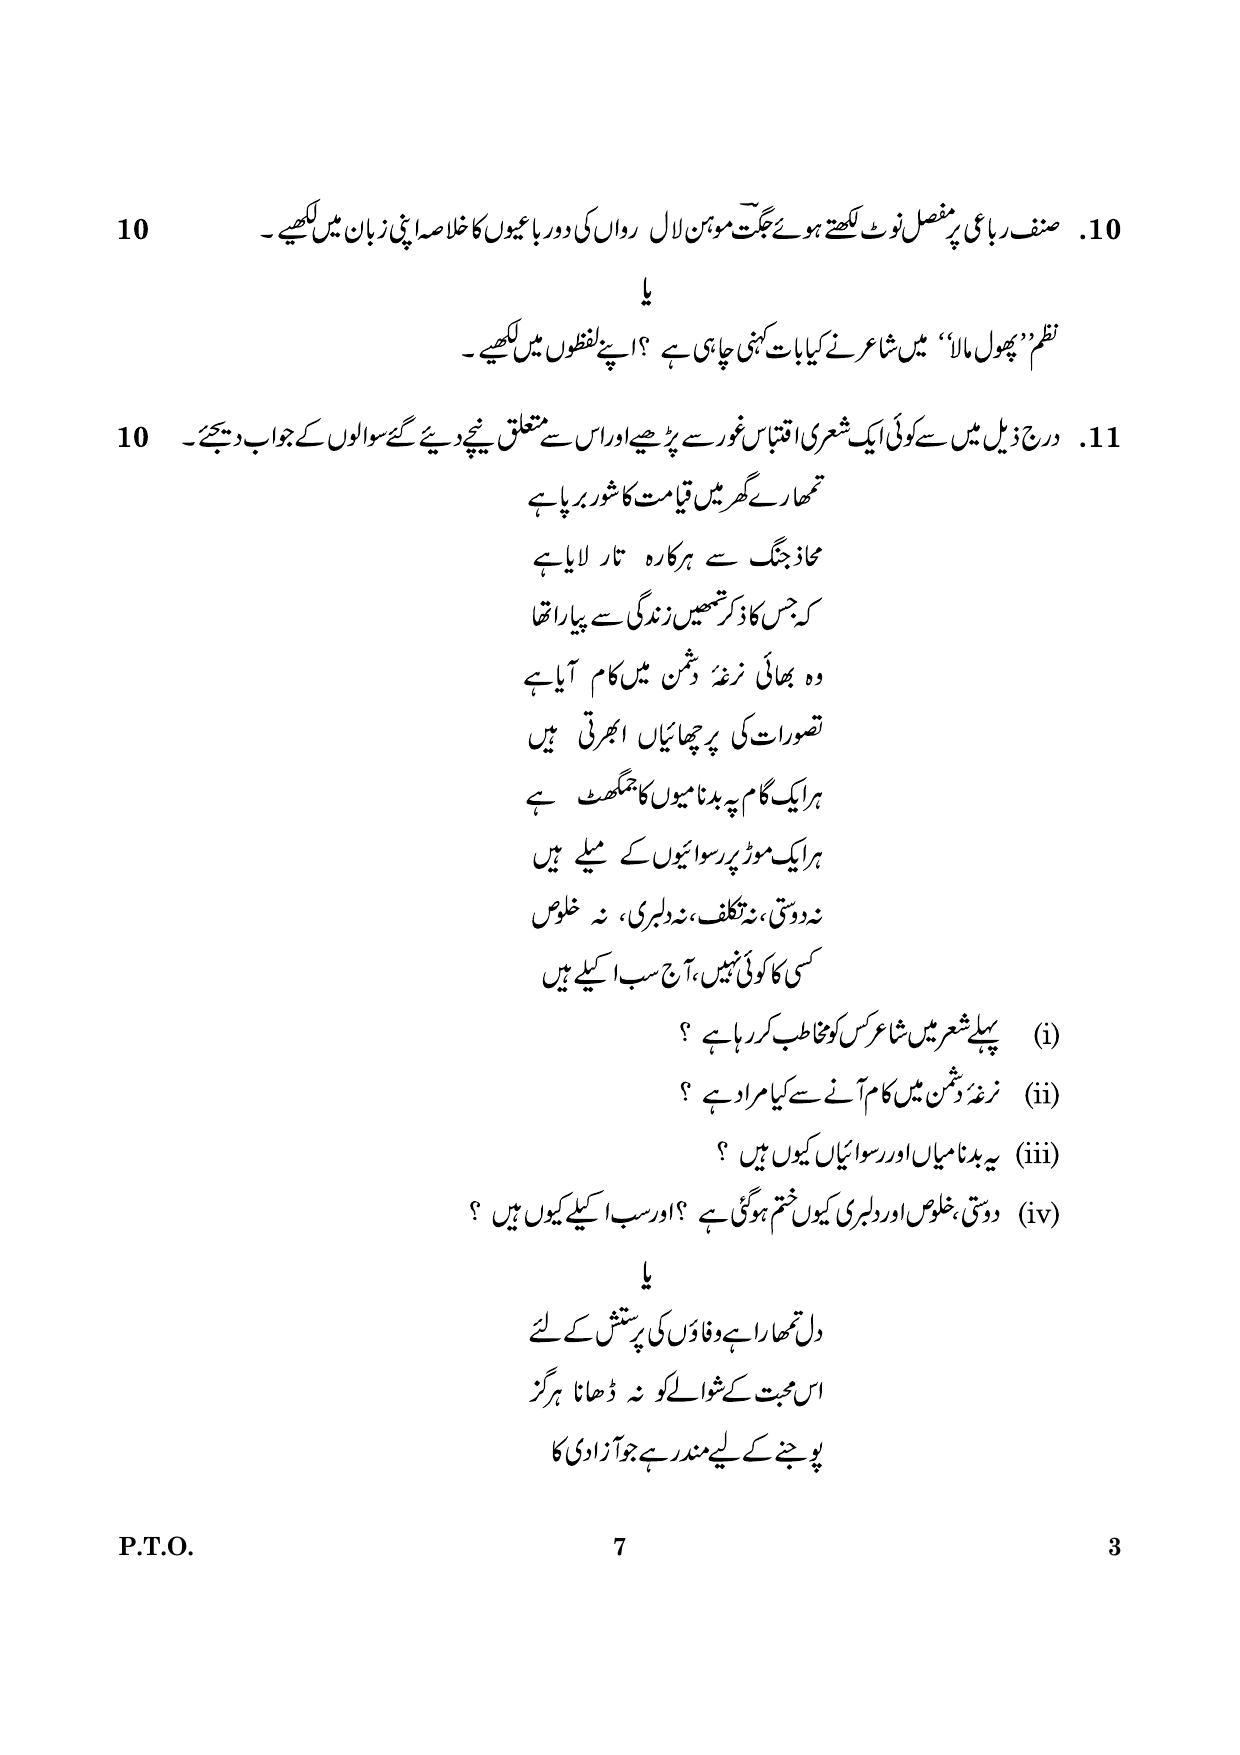 CBSE Class 12 003 Urdu Core 2016 Question Paper - Page 7